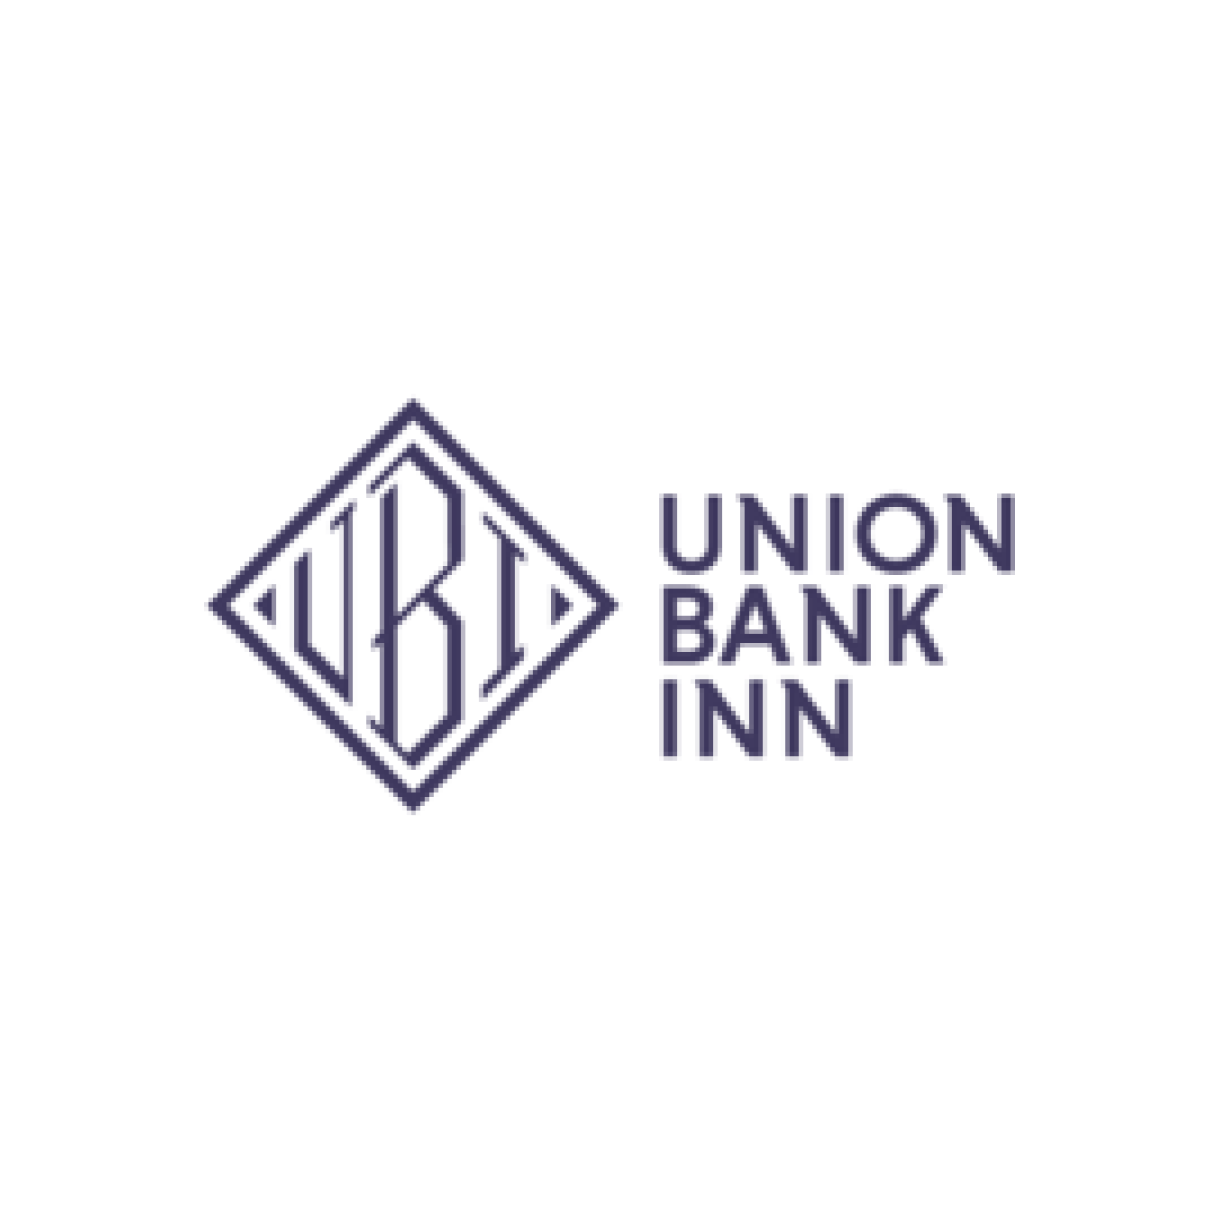 Union Bank Inn Red Arrow